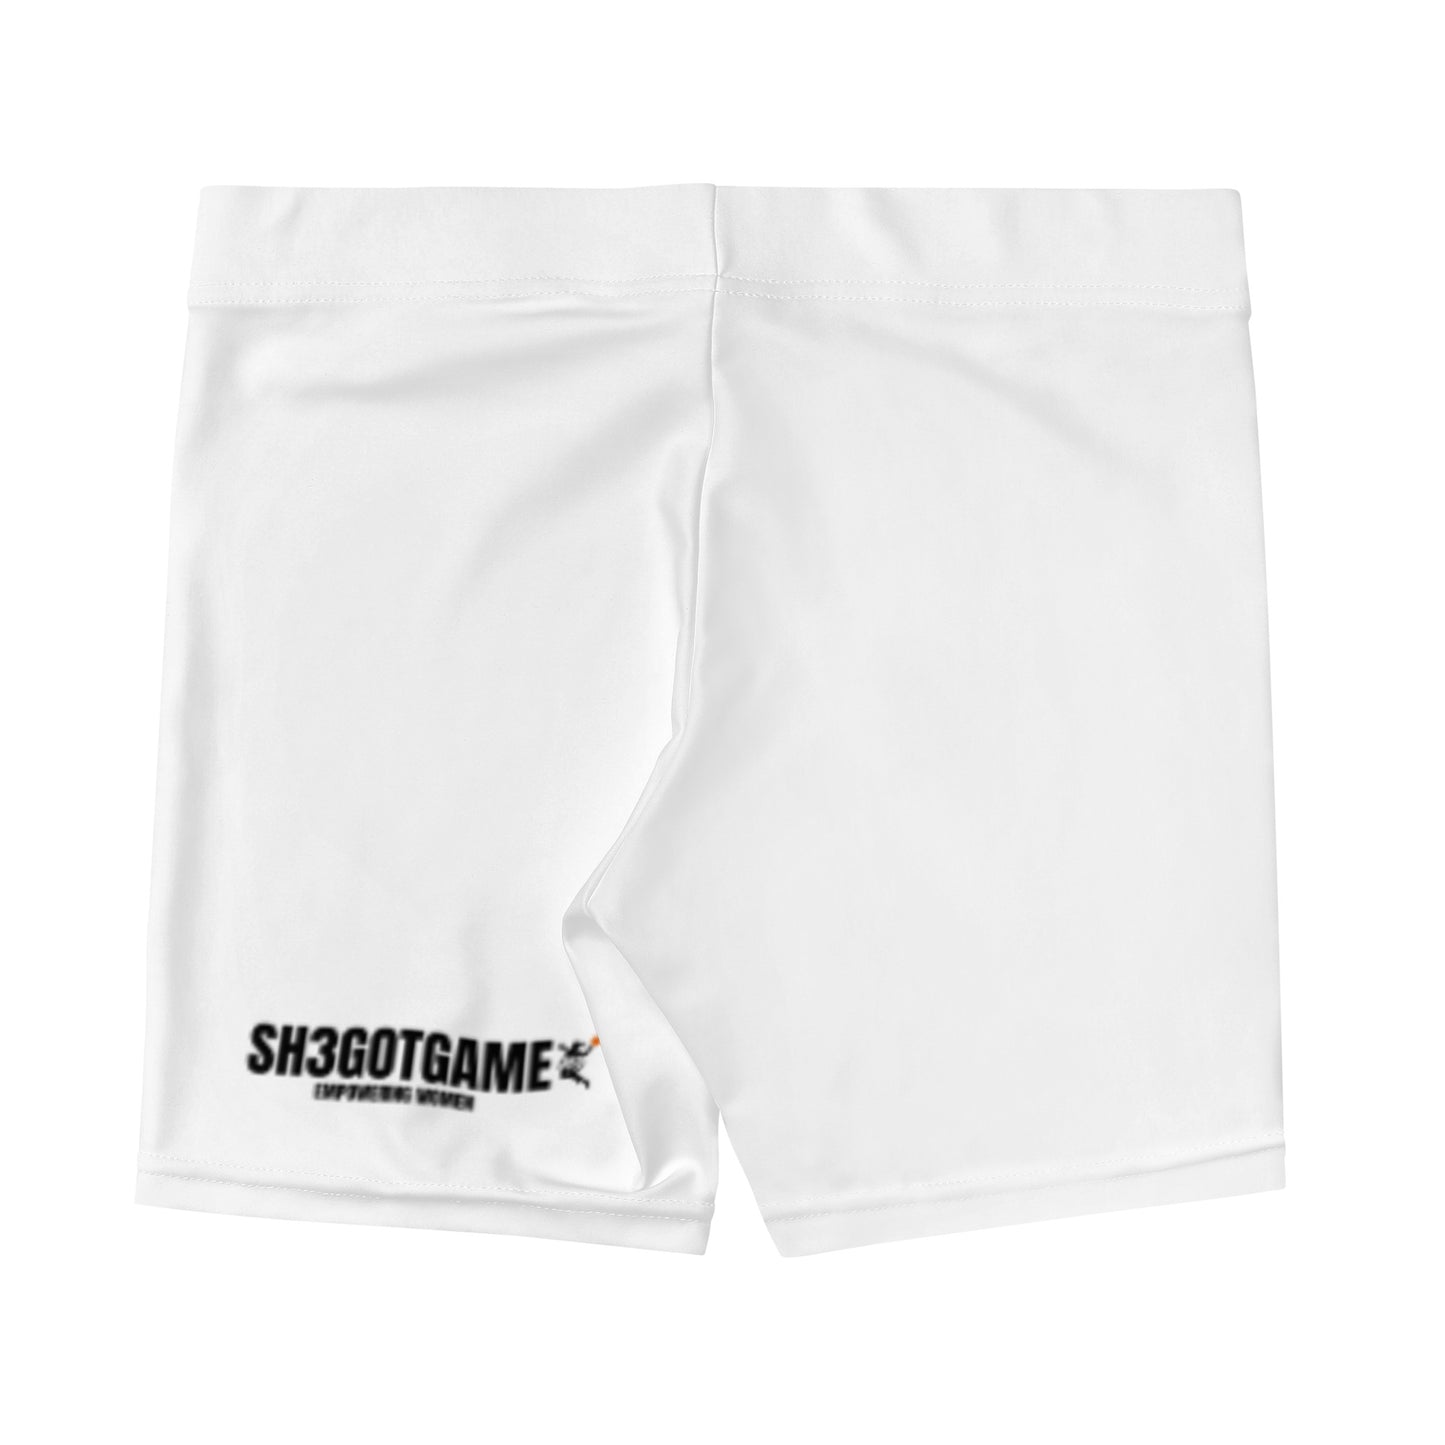 Sh3gotgame White Compression Shorts